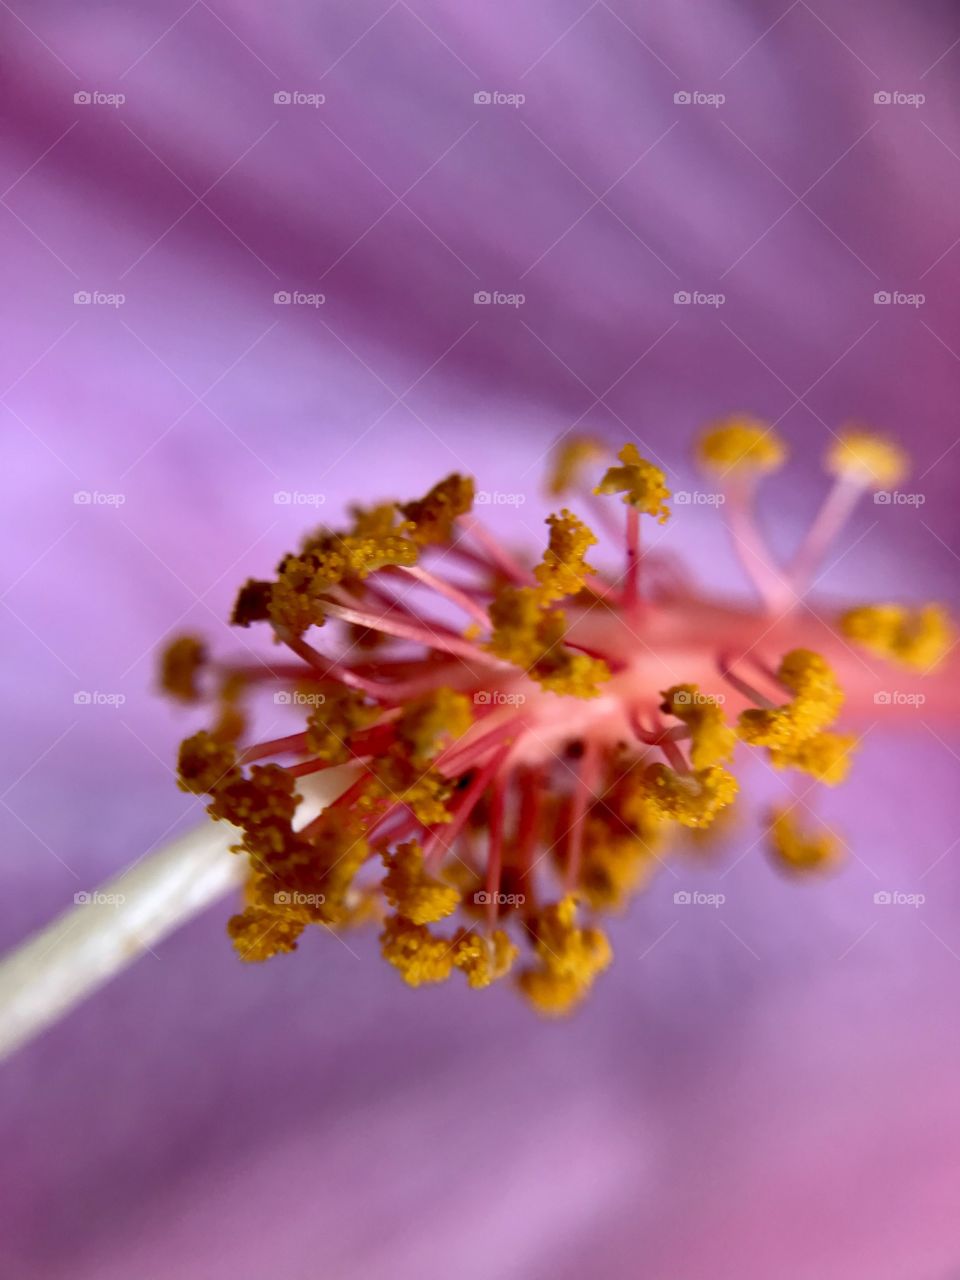 Flower center with pollen 